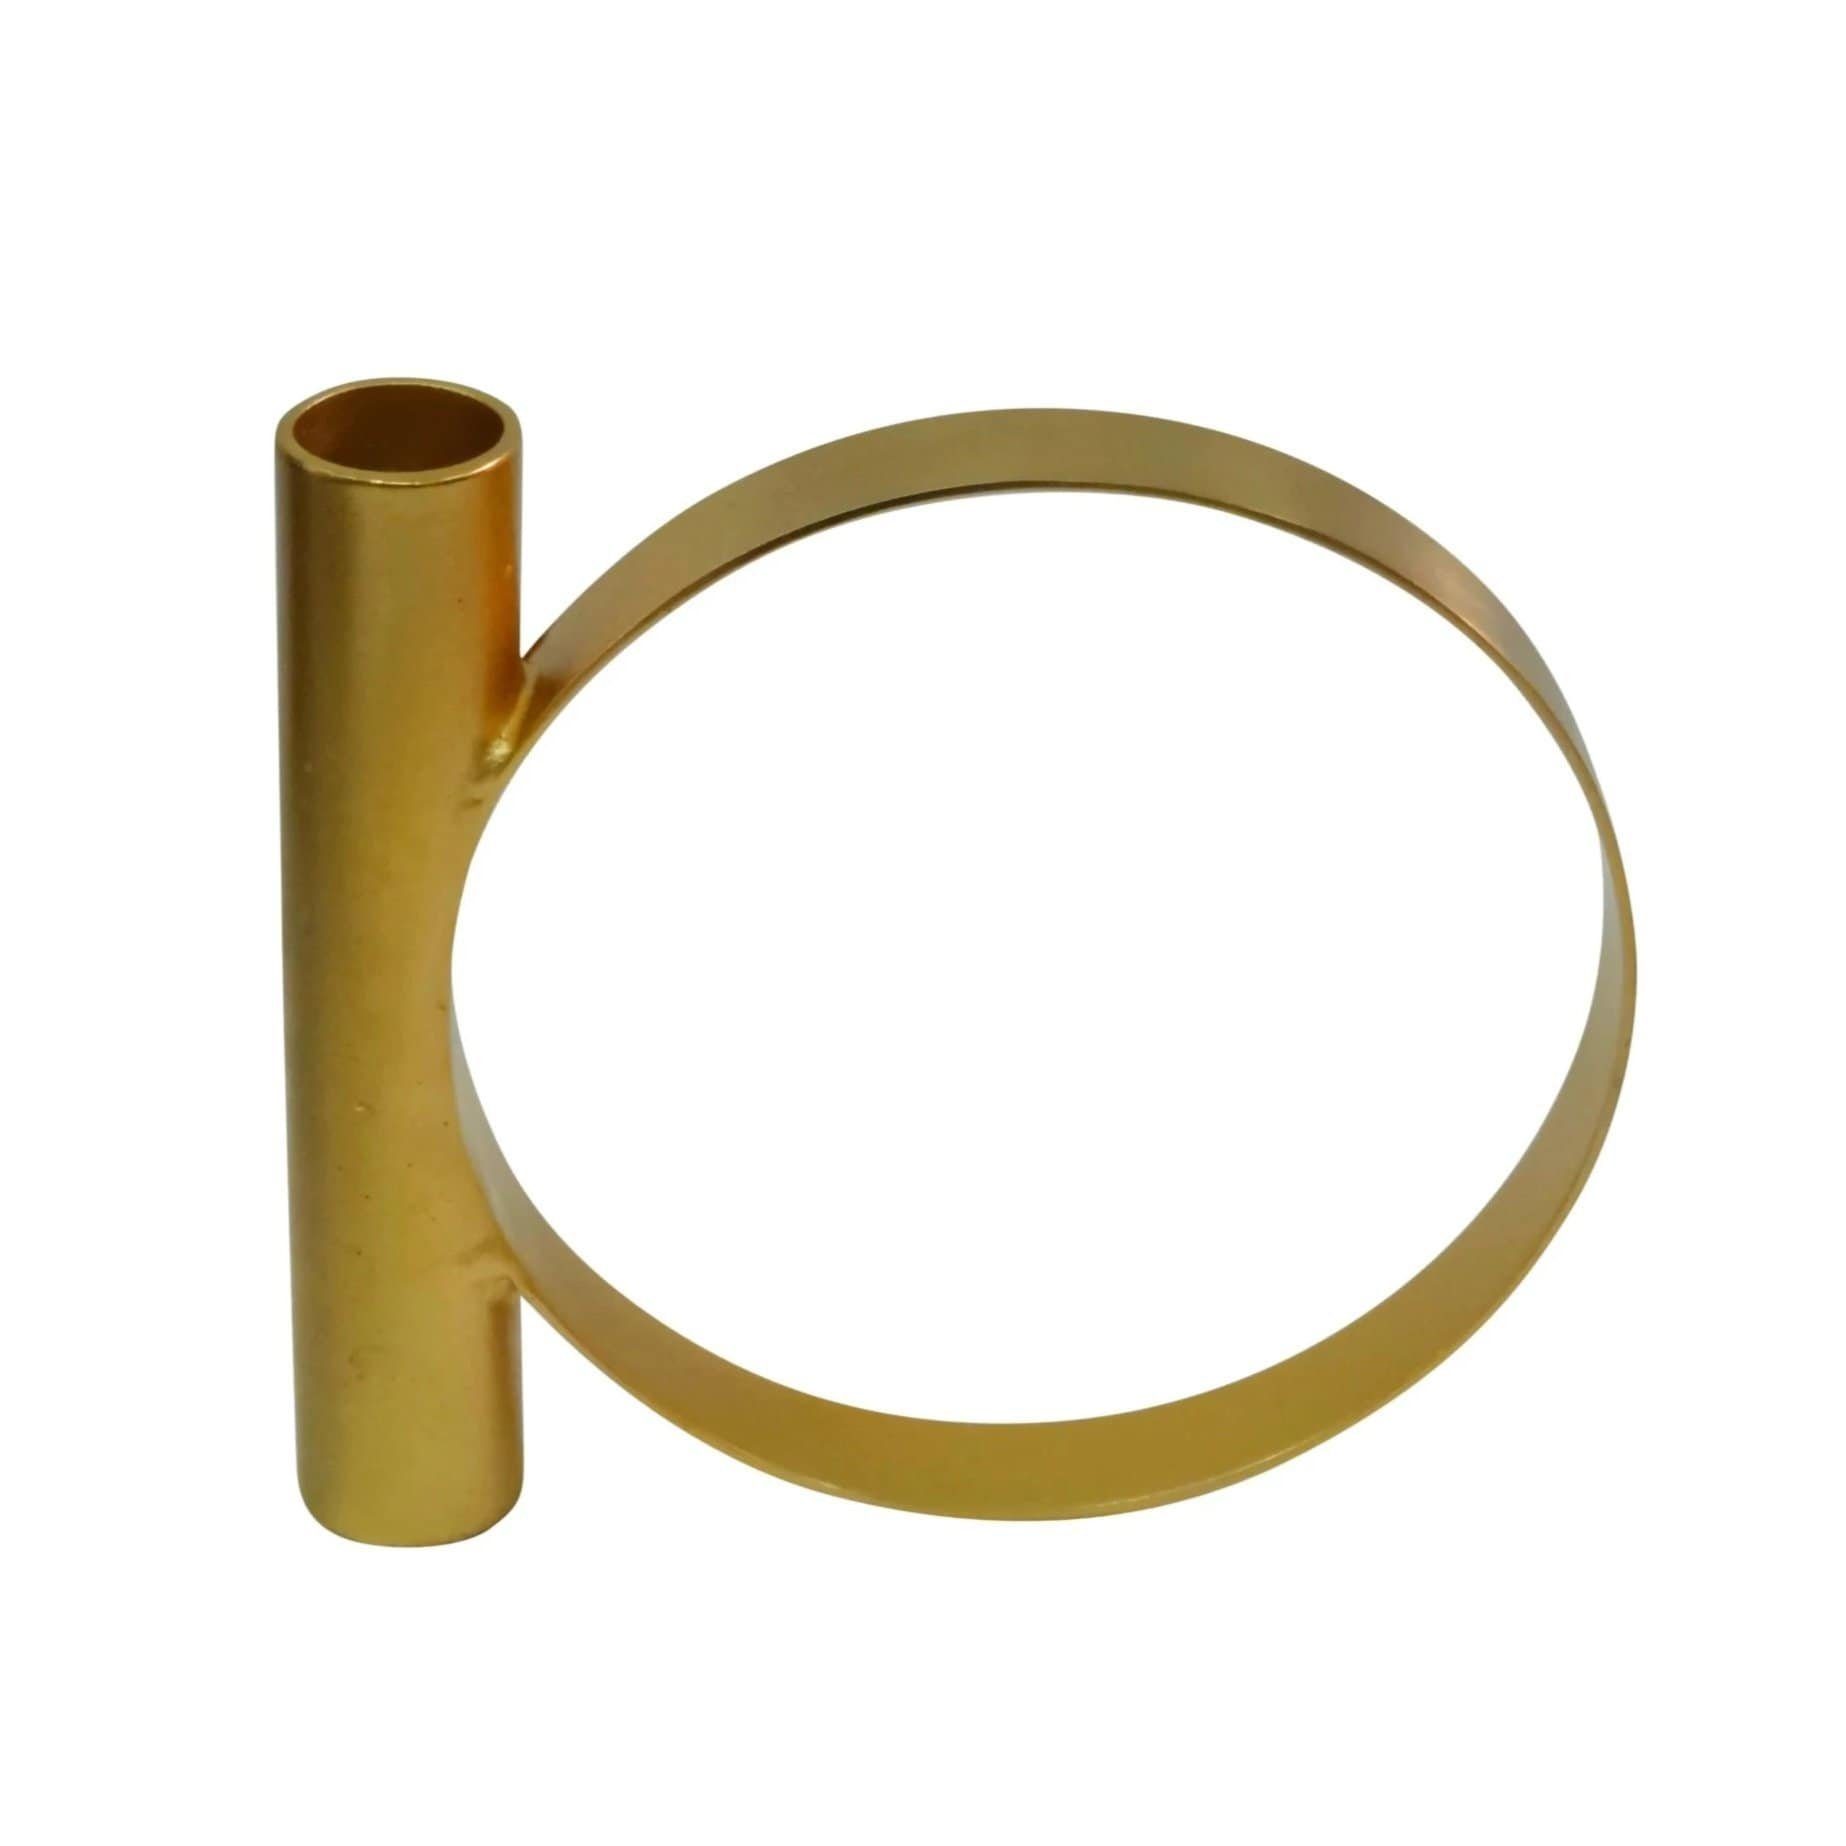 LaLe Living Kerzenständer Kerzenhalter Geo2 aus Eisen in Gold, 15x12,5cm | Kerzenständer